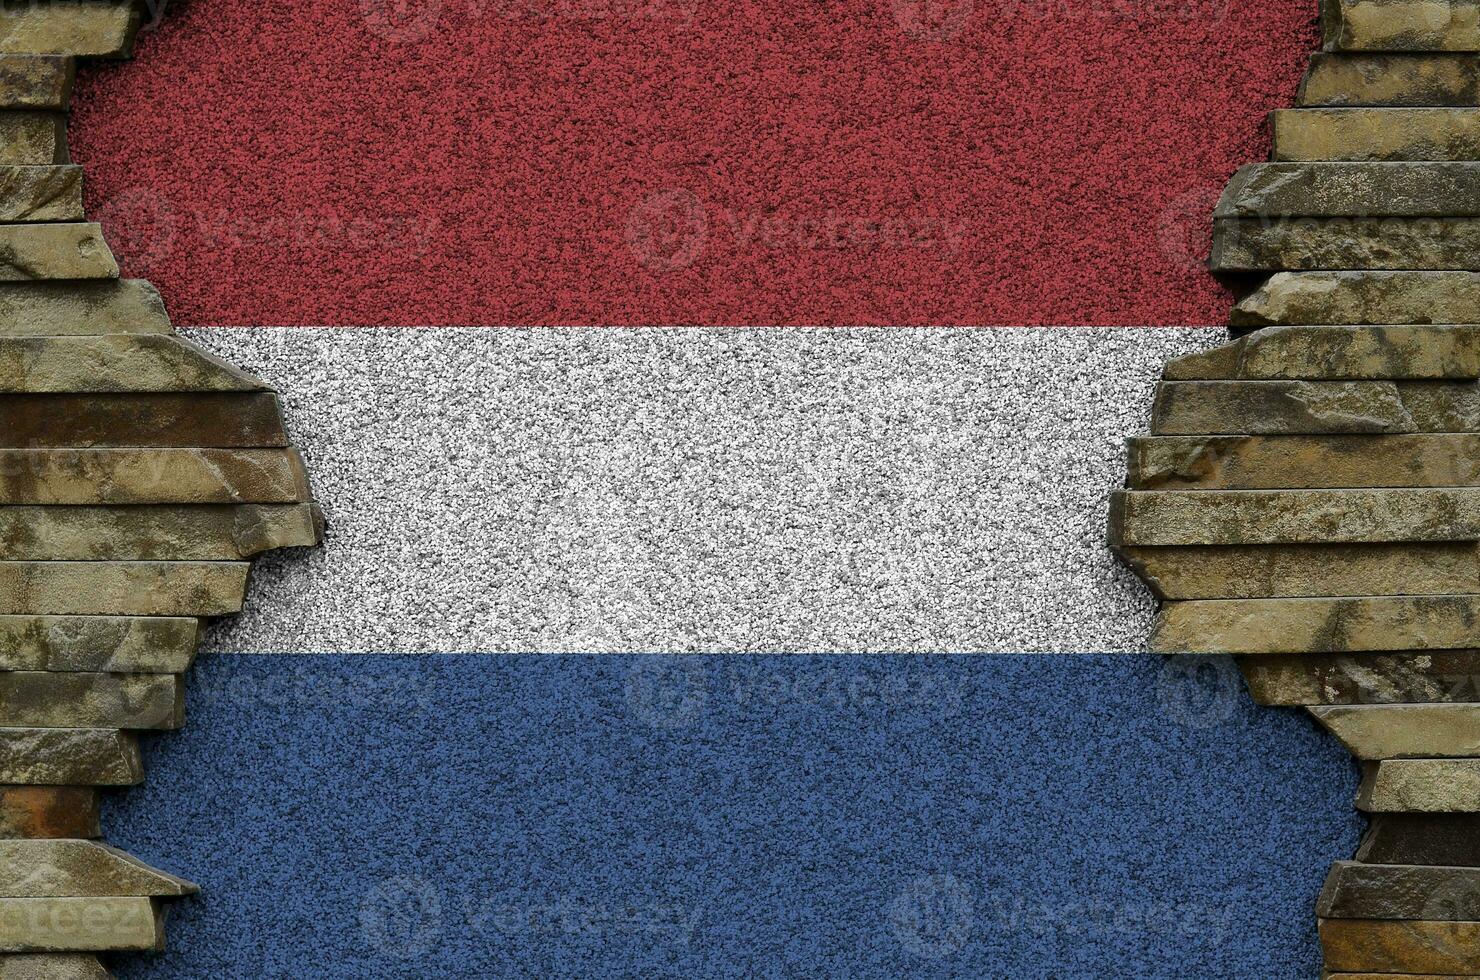 nederländerna flagga avbildad i måla färger på gammal sten vägg närbild. texturerad baner på sten vägg bakgrund foto